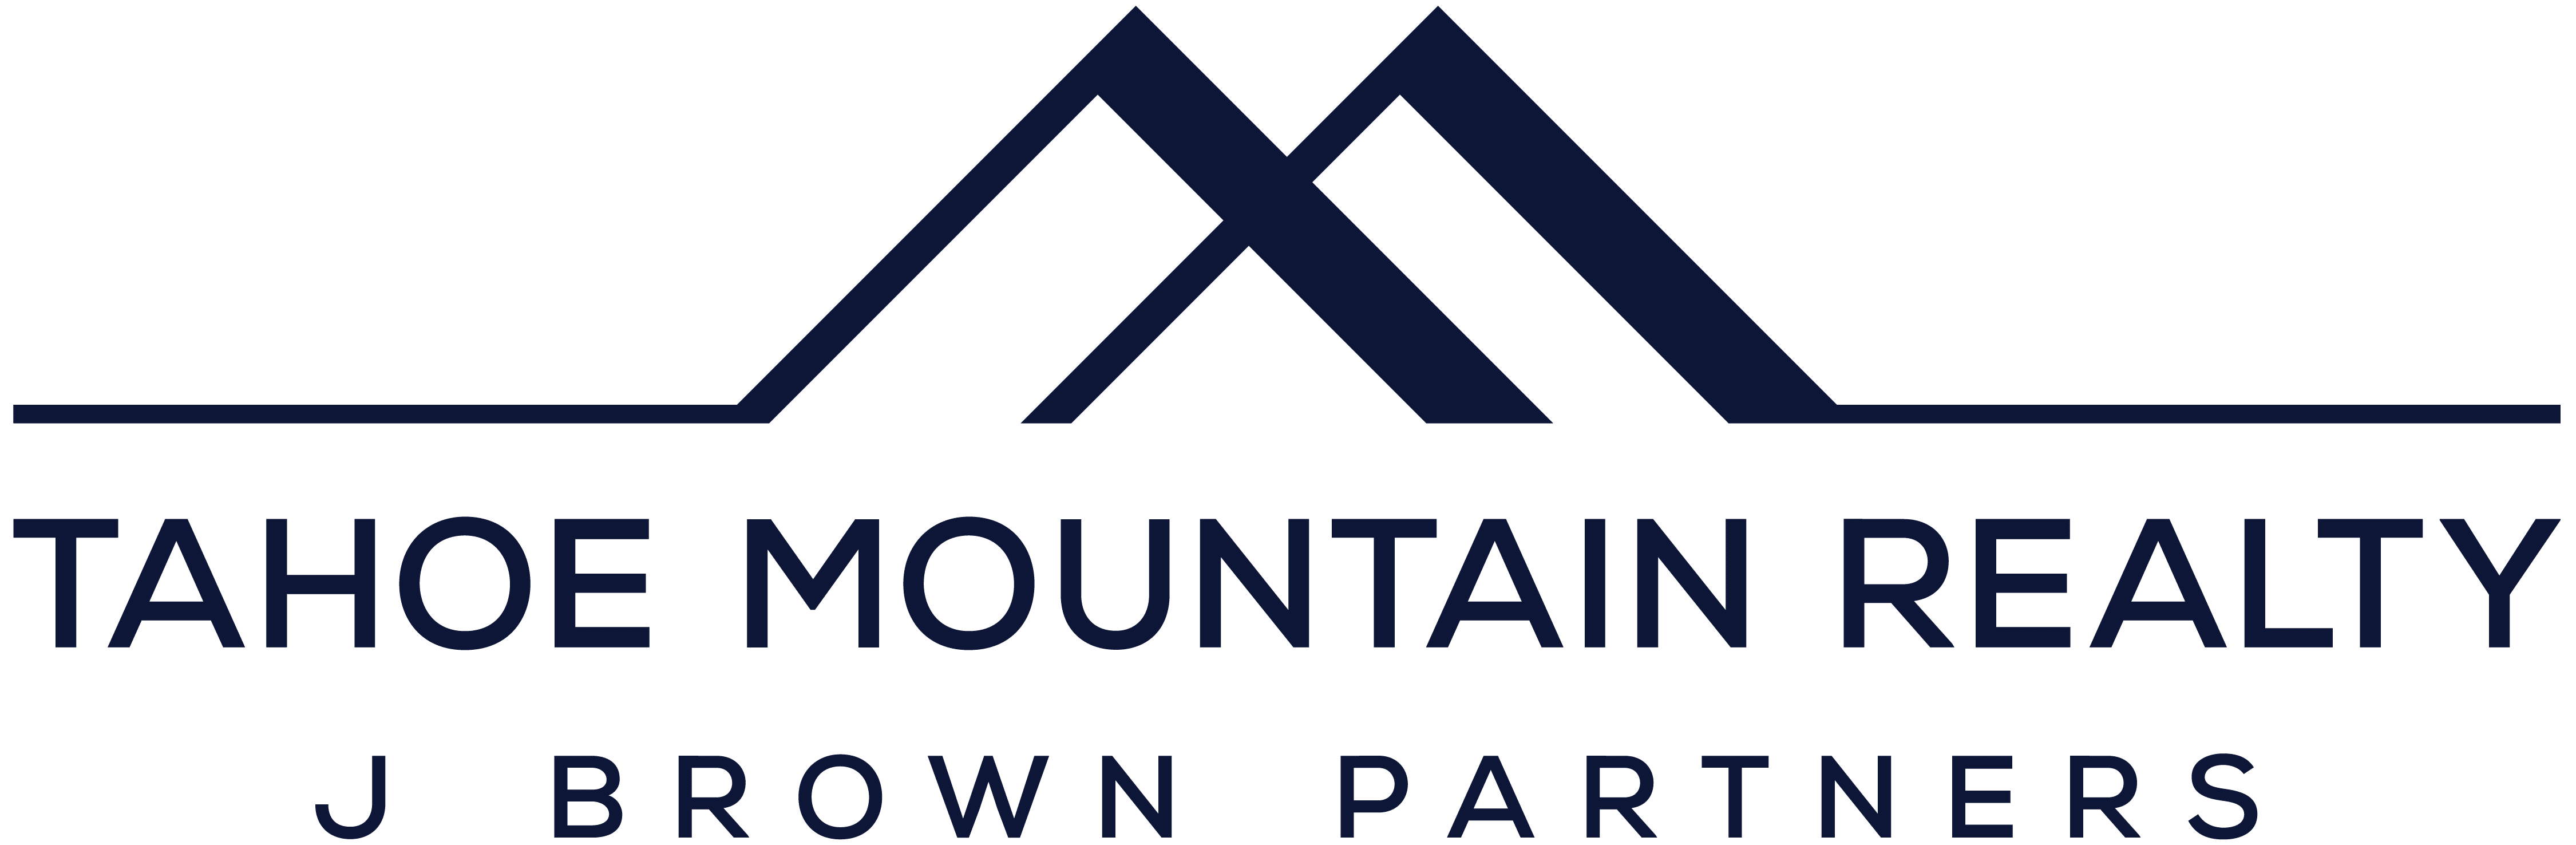 Tahoe Mountain Real Estate forbes logo